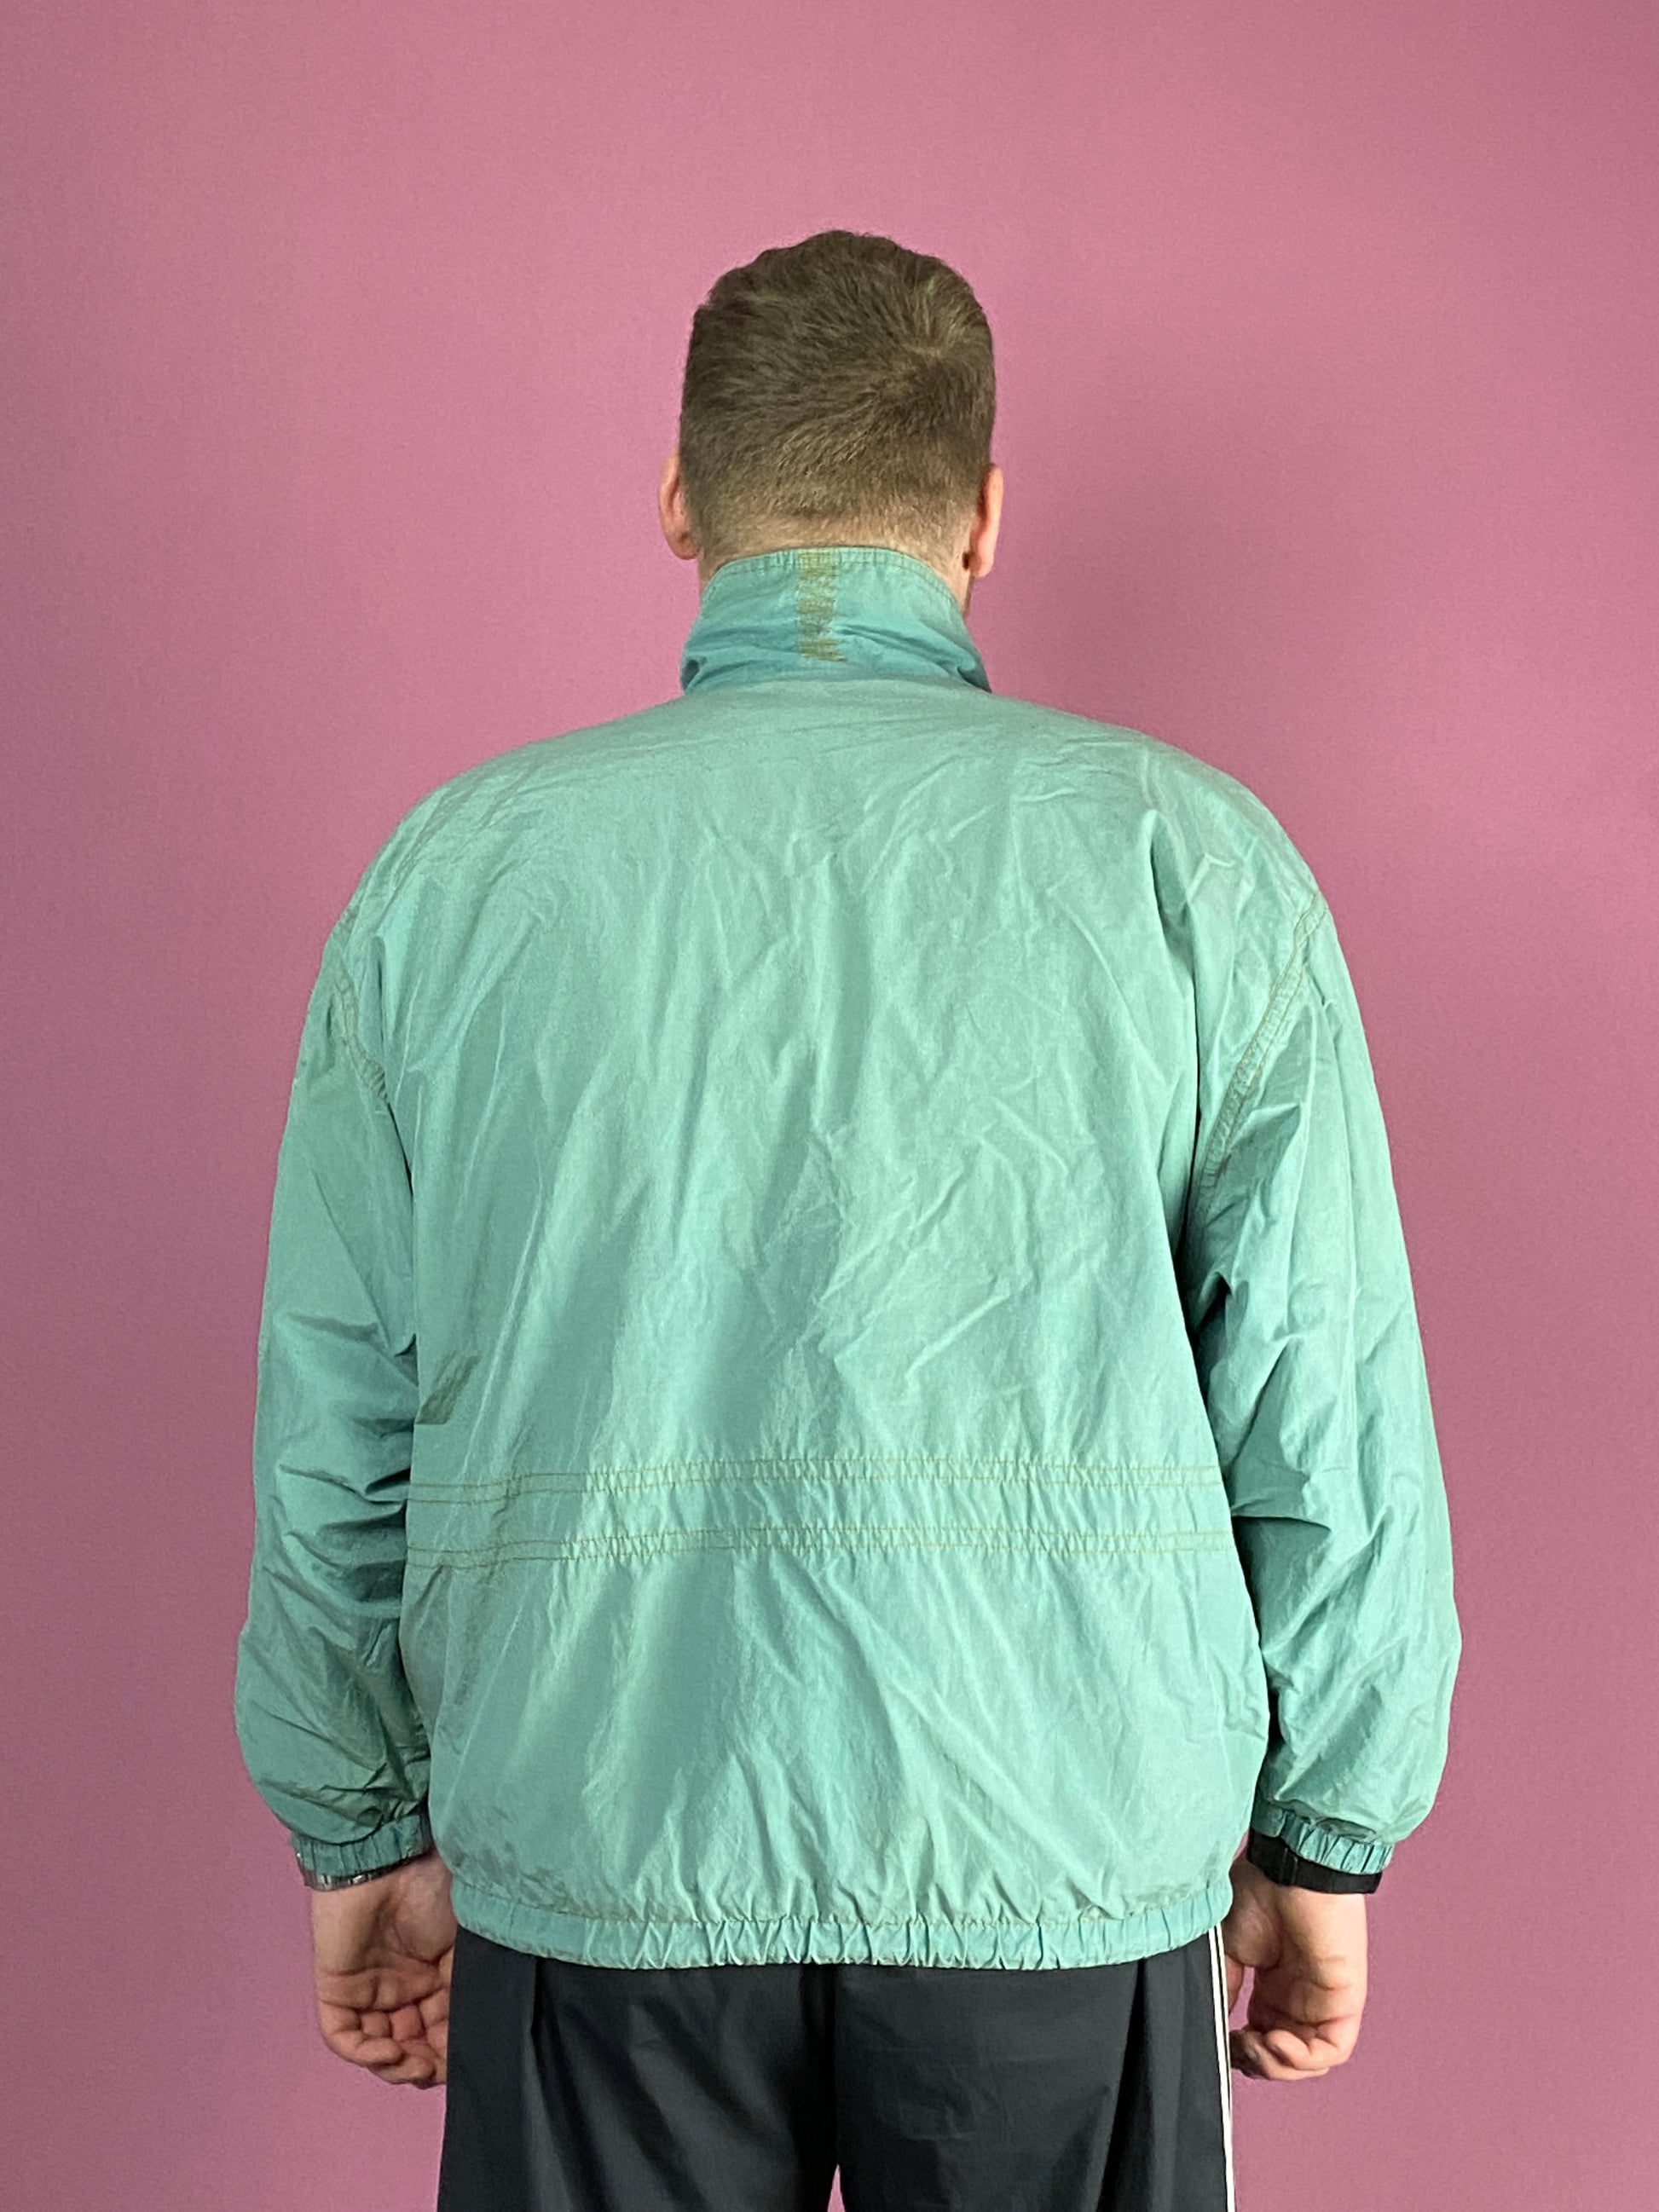 90s Vintage Men's Windbreaker Jacket - XL Green Cotton Blend